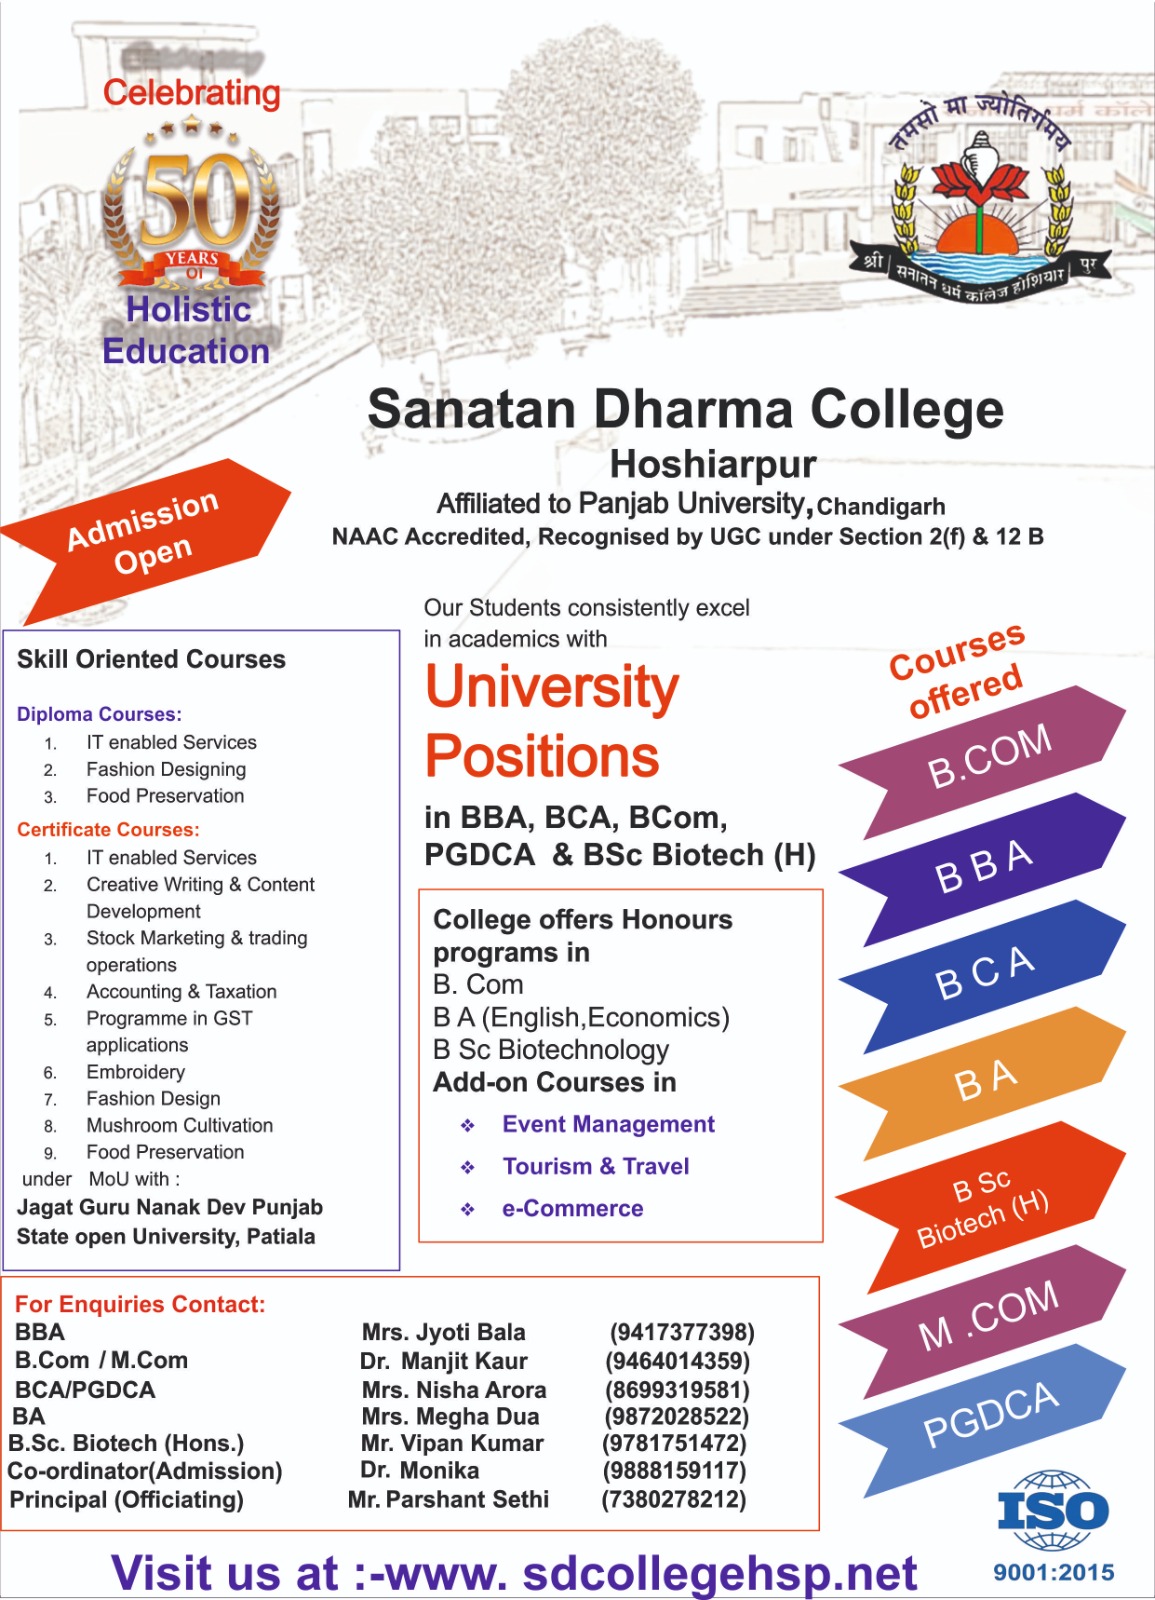 Sanatam Dharam, College, Hoshiarpur